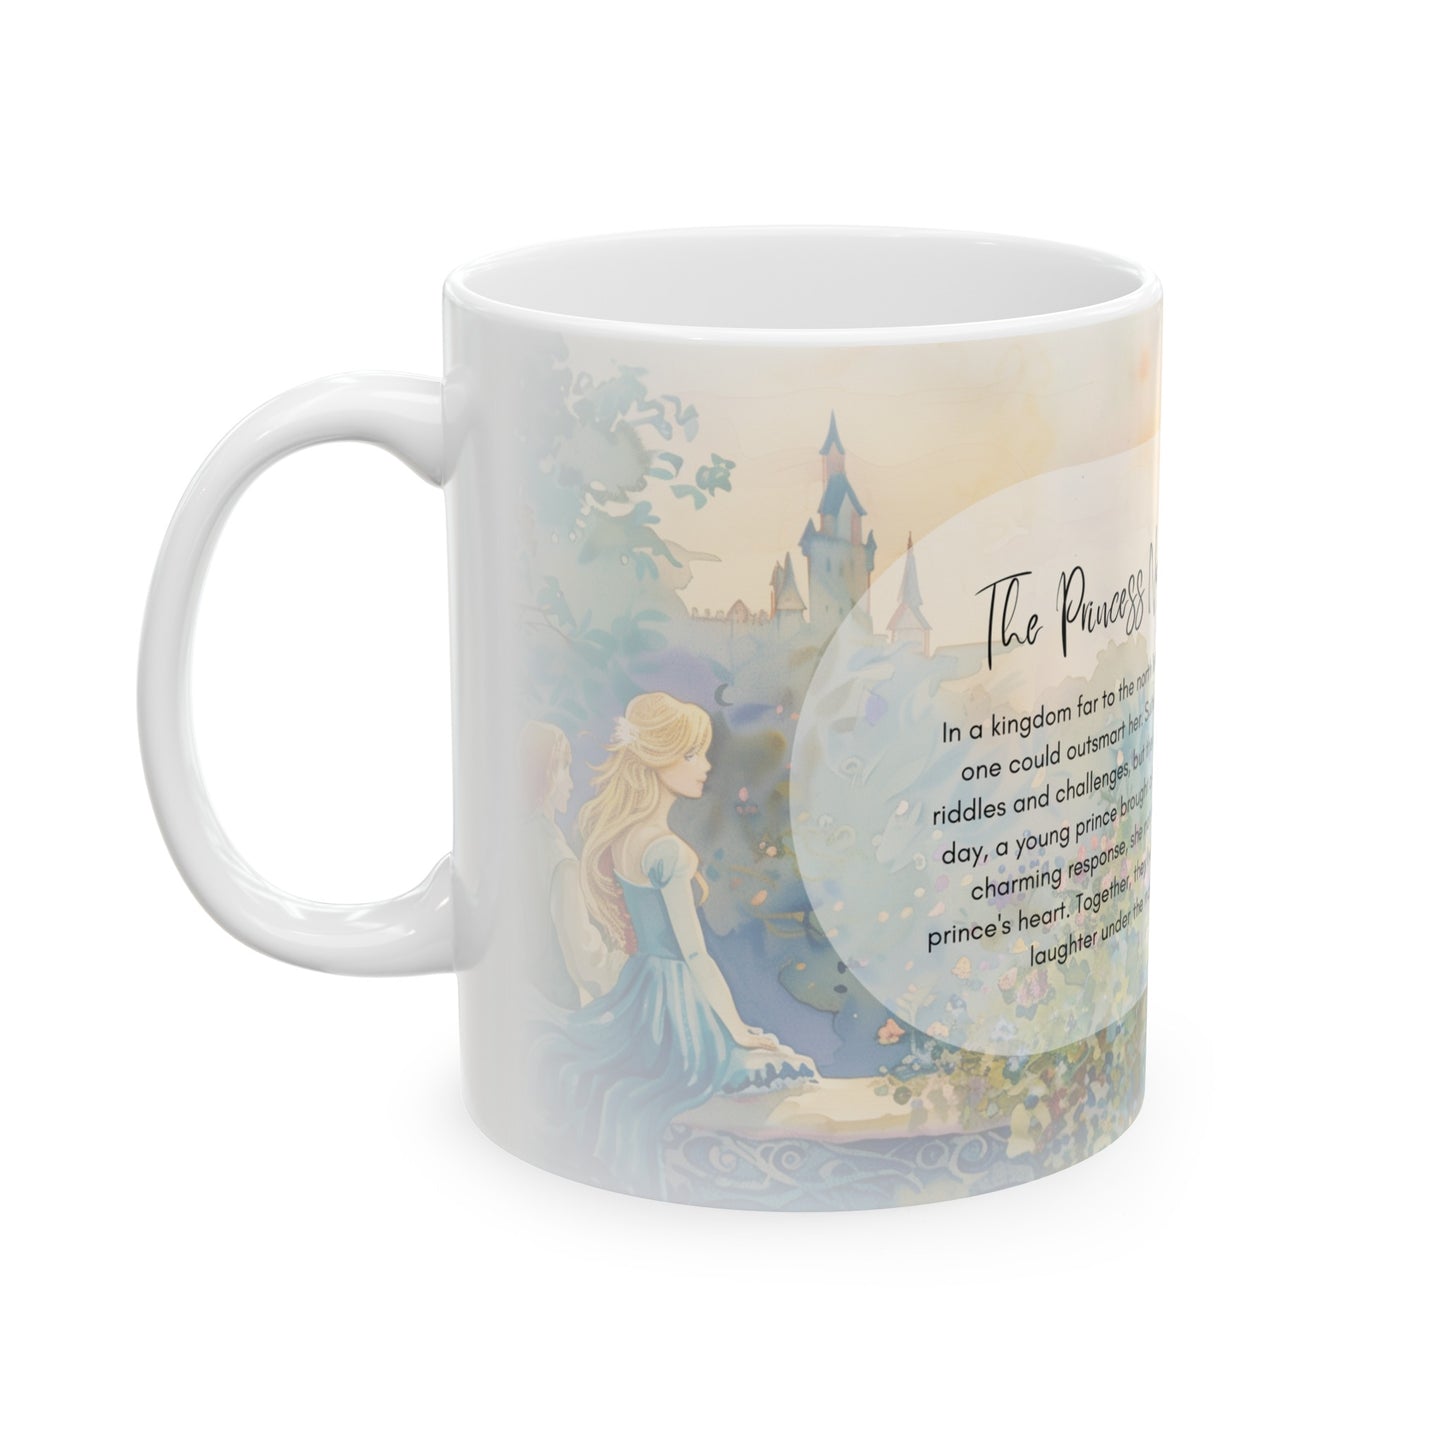 The Princess No One Could Silence Mug Fairytale Mug Princess Mug Gift Fairytale Mug Collection (11oz, 15oz) Gift for Grandma Gift for Mom